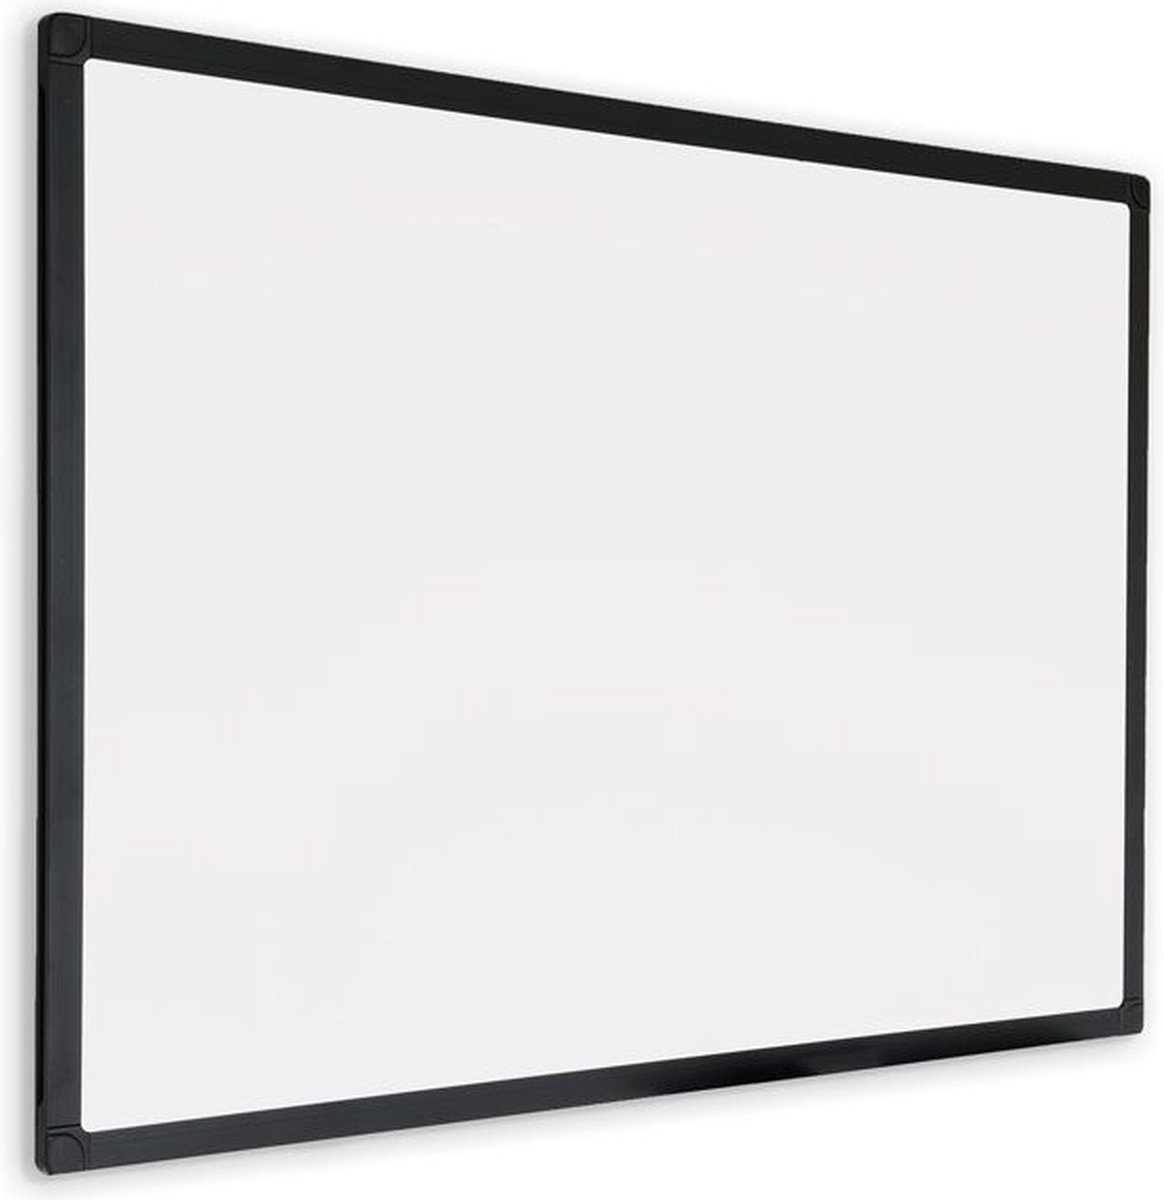 Panneau d'affichage magnétique en verre peint noir 90x120 cm